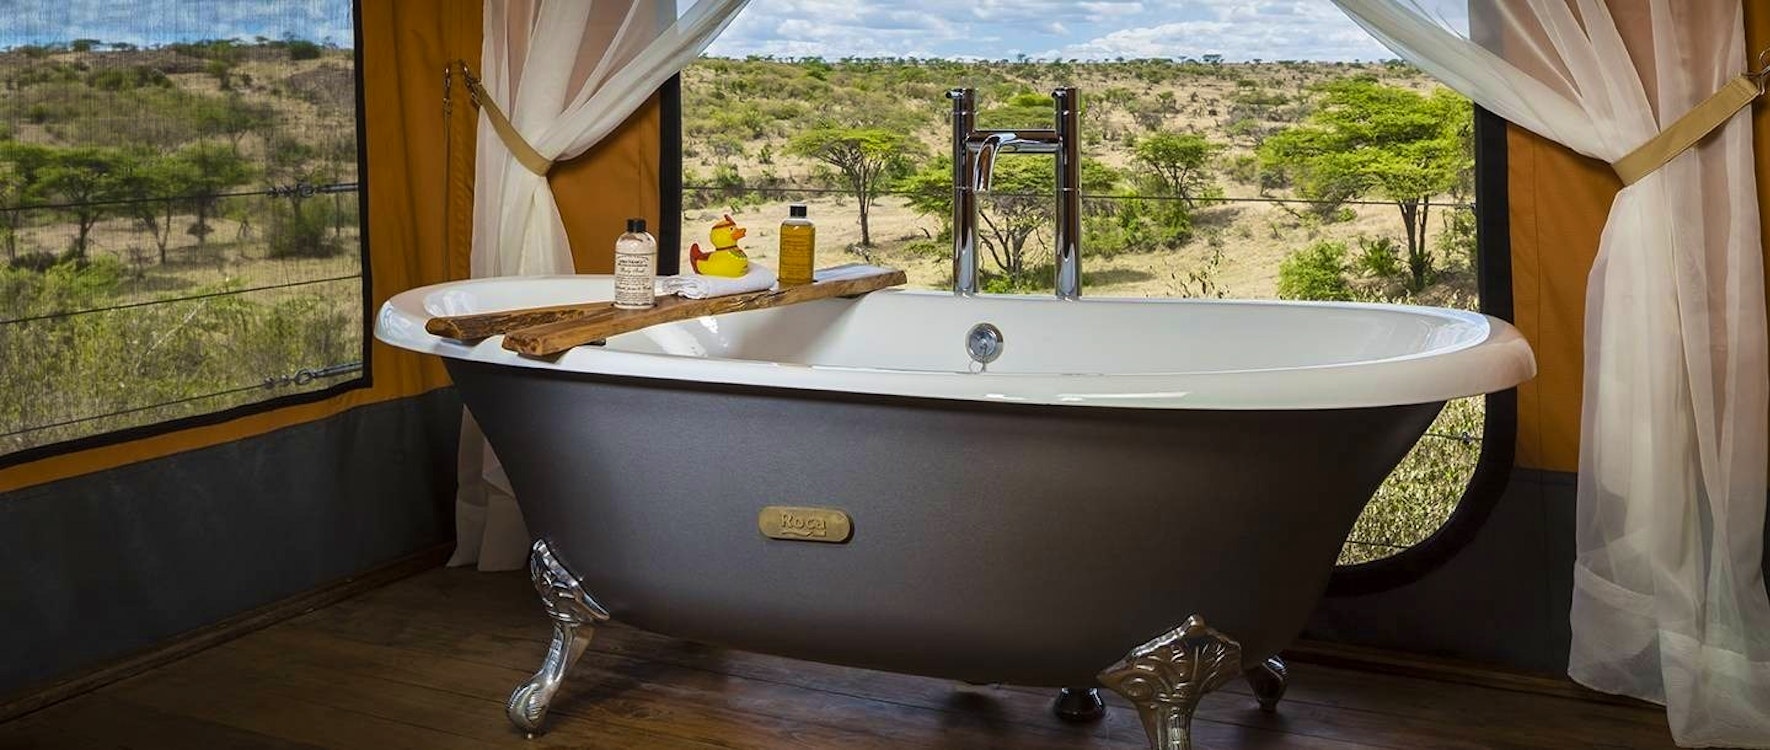 valley view luxury tented suite lounge at mahali mzuri kenya